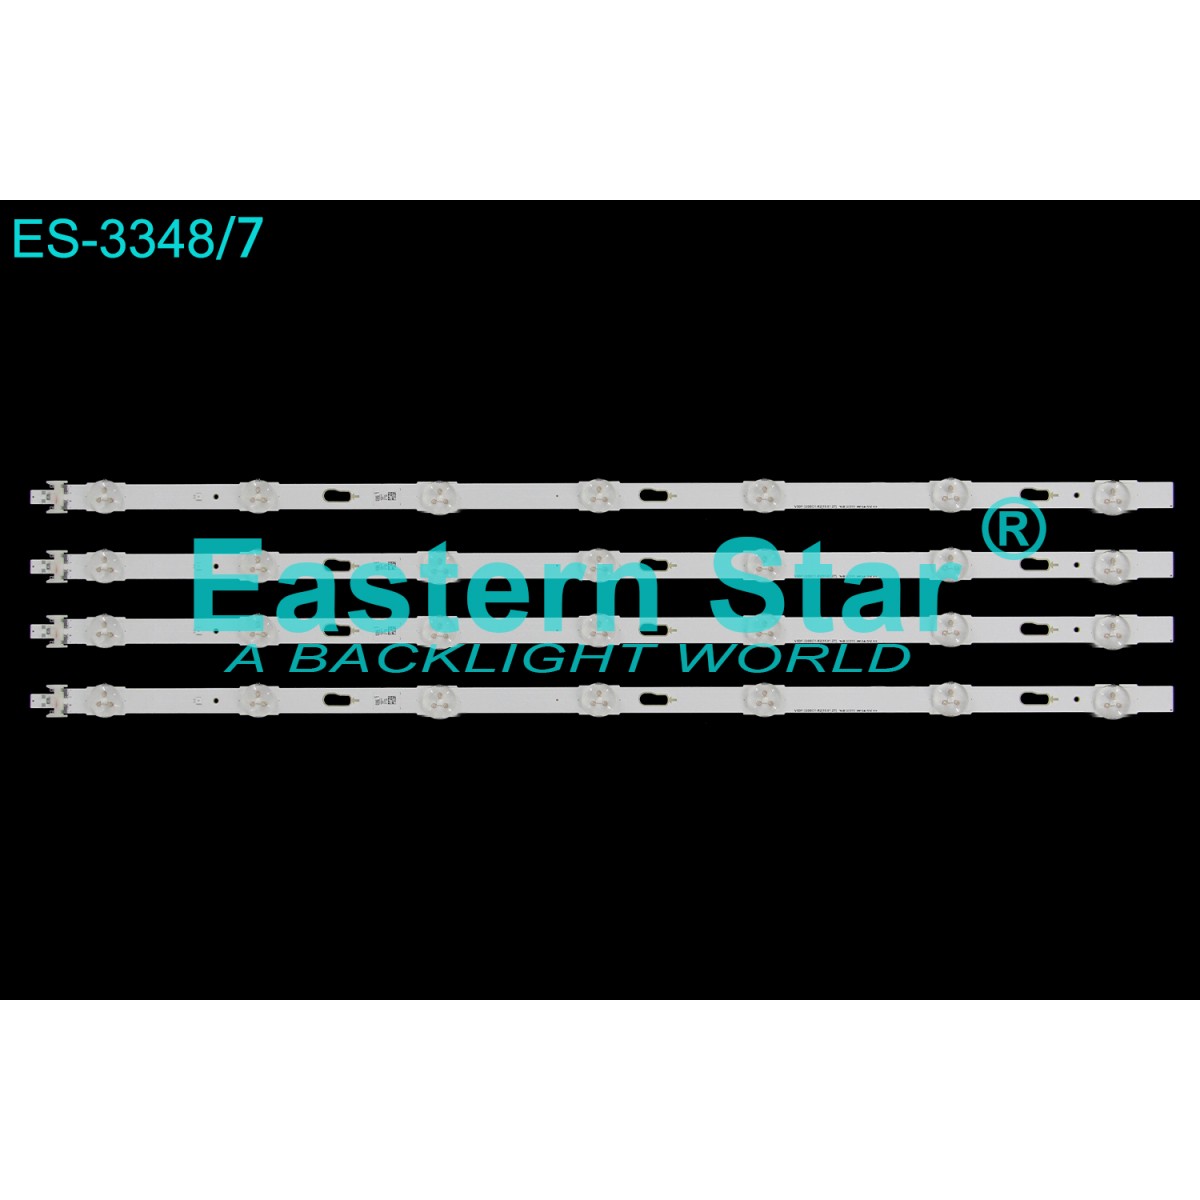 ES-3348, SAMSUNG, BN96-34782A, BN96-35372A, UE32J6370SU, UE32J6370, V5DF-320DC1-R2, S_5J63_32_FL_7_REV1.5, TV LED BAR